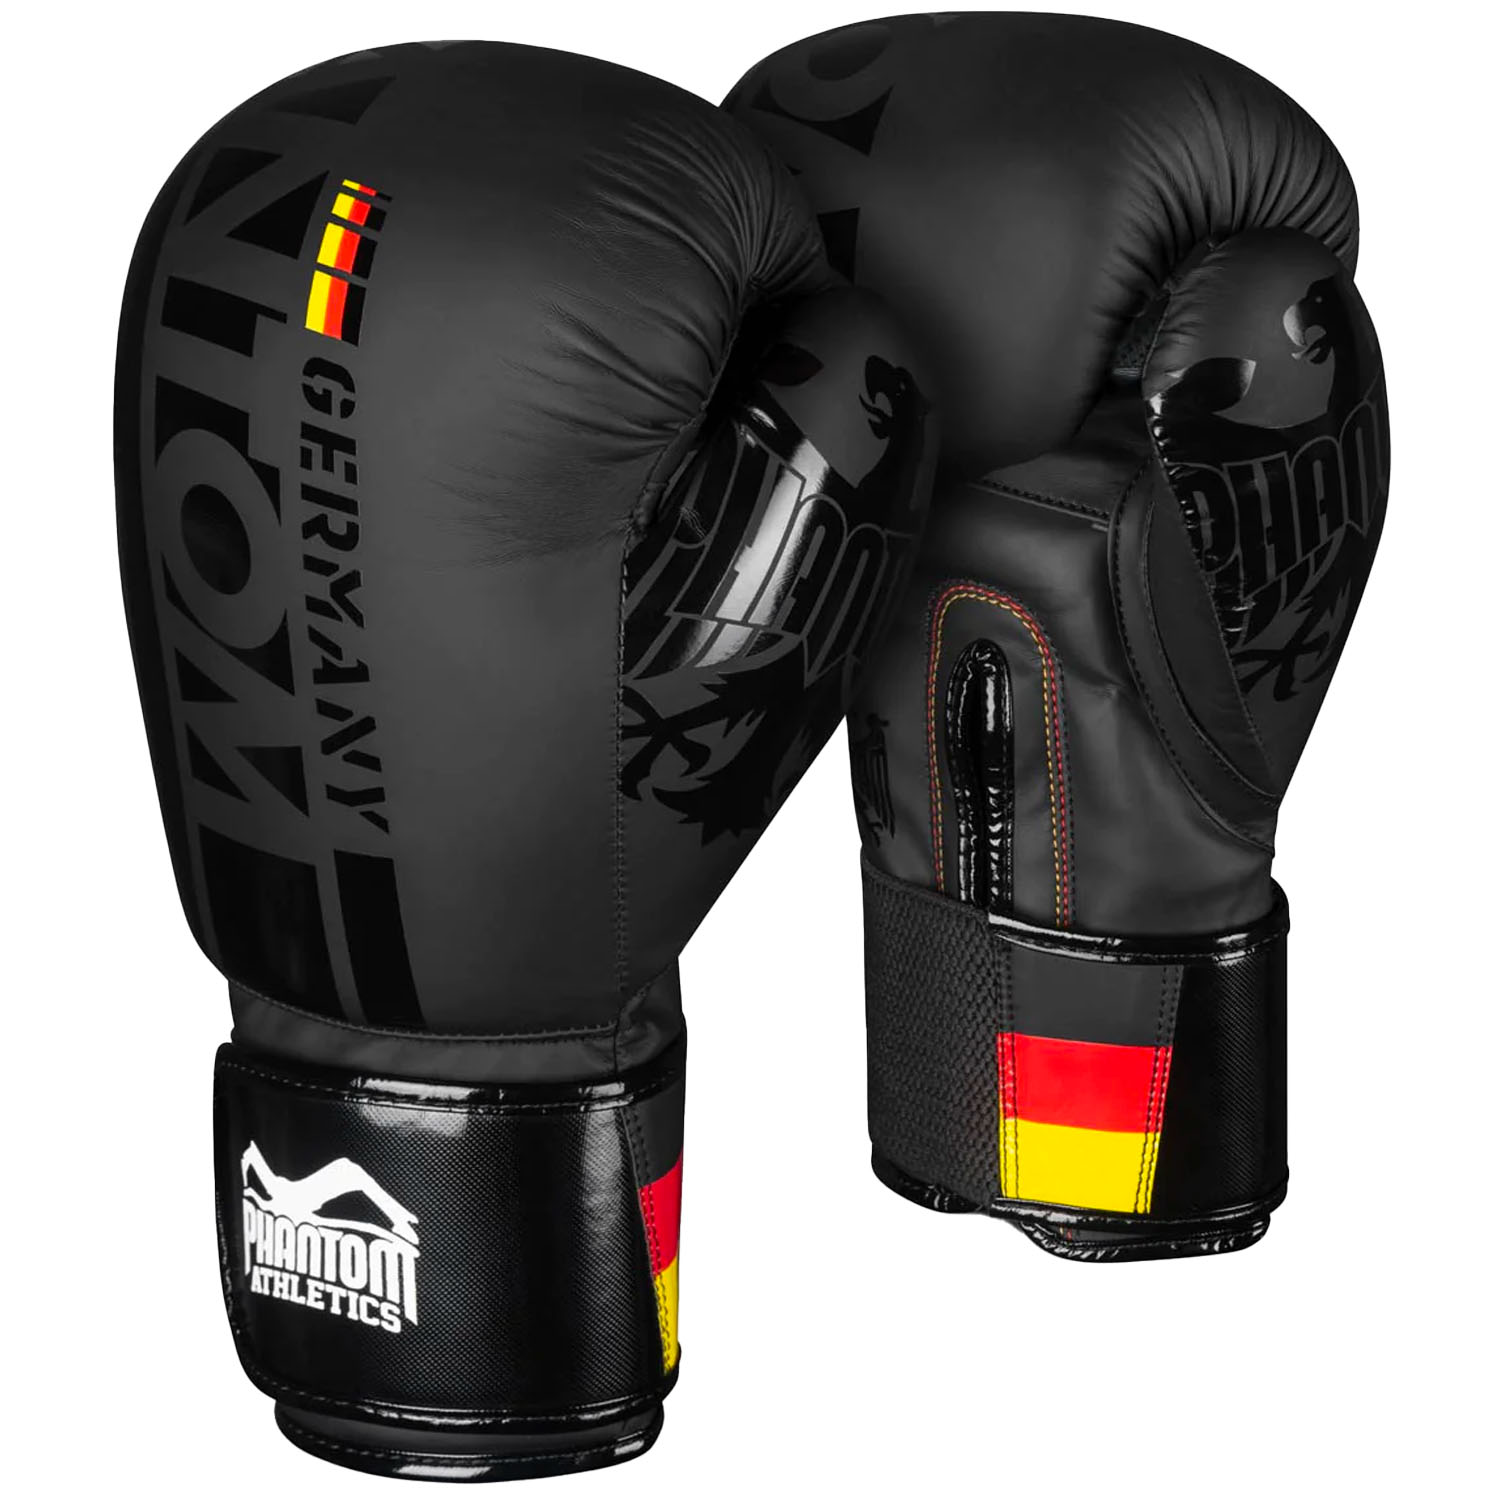 Phantom Athletics Boxing Gloves, Germany, black, 10 Oz